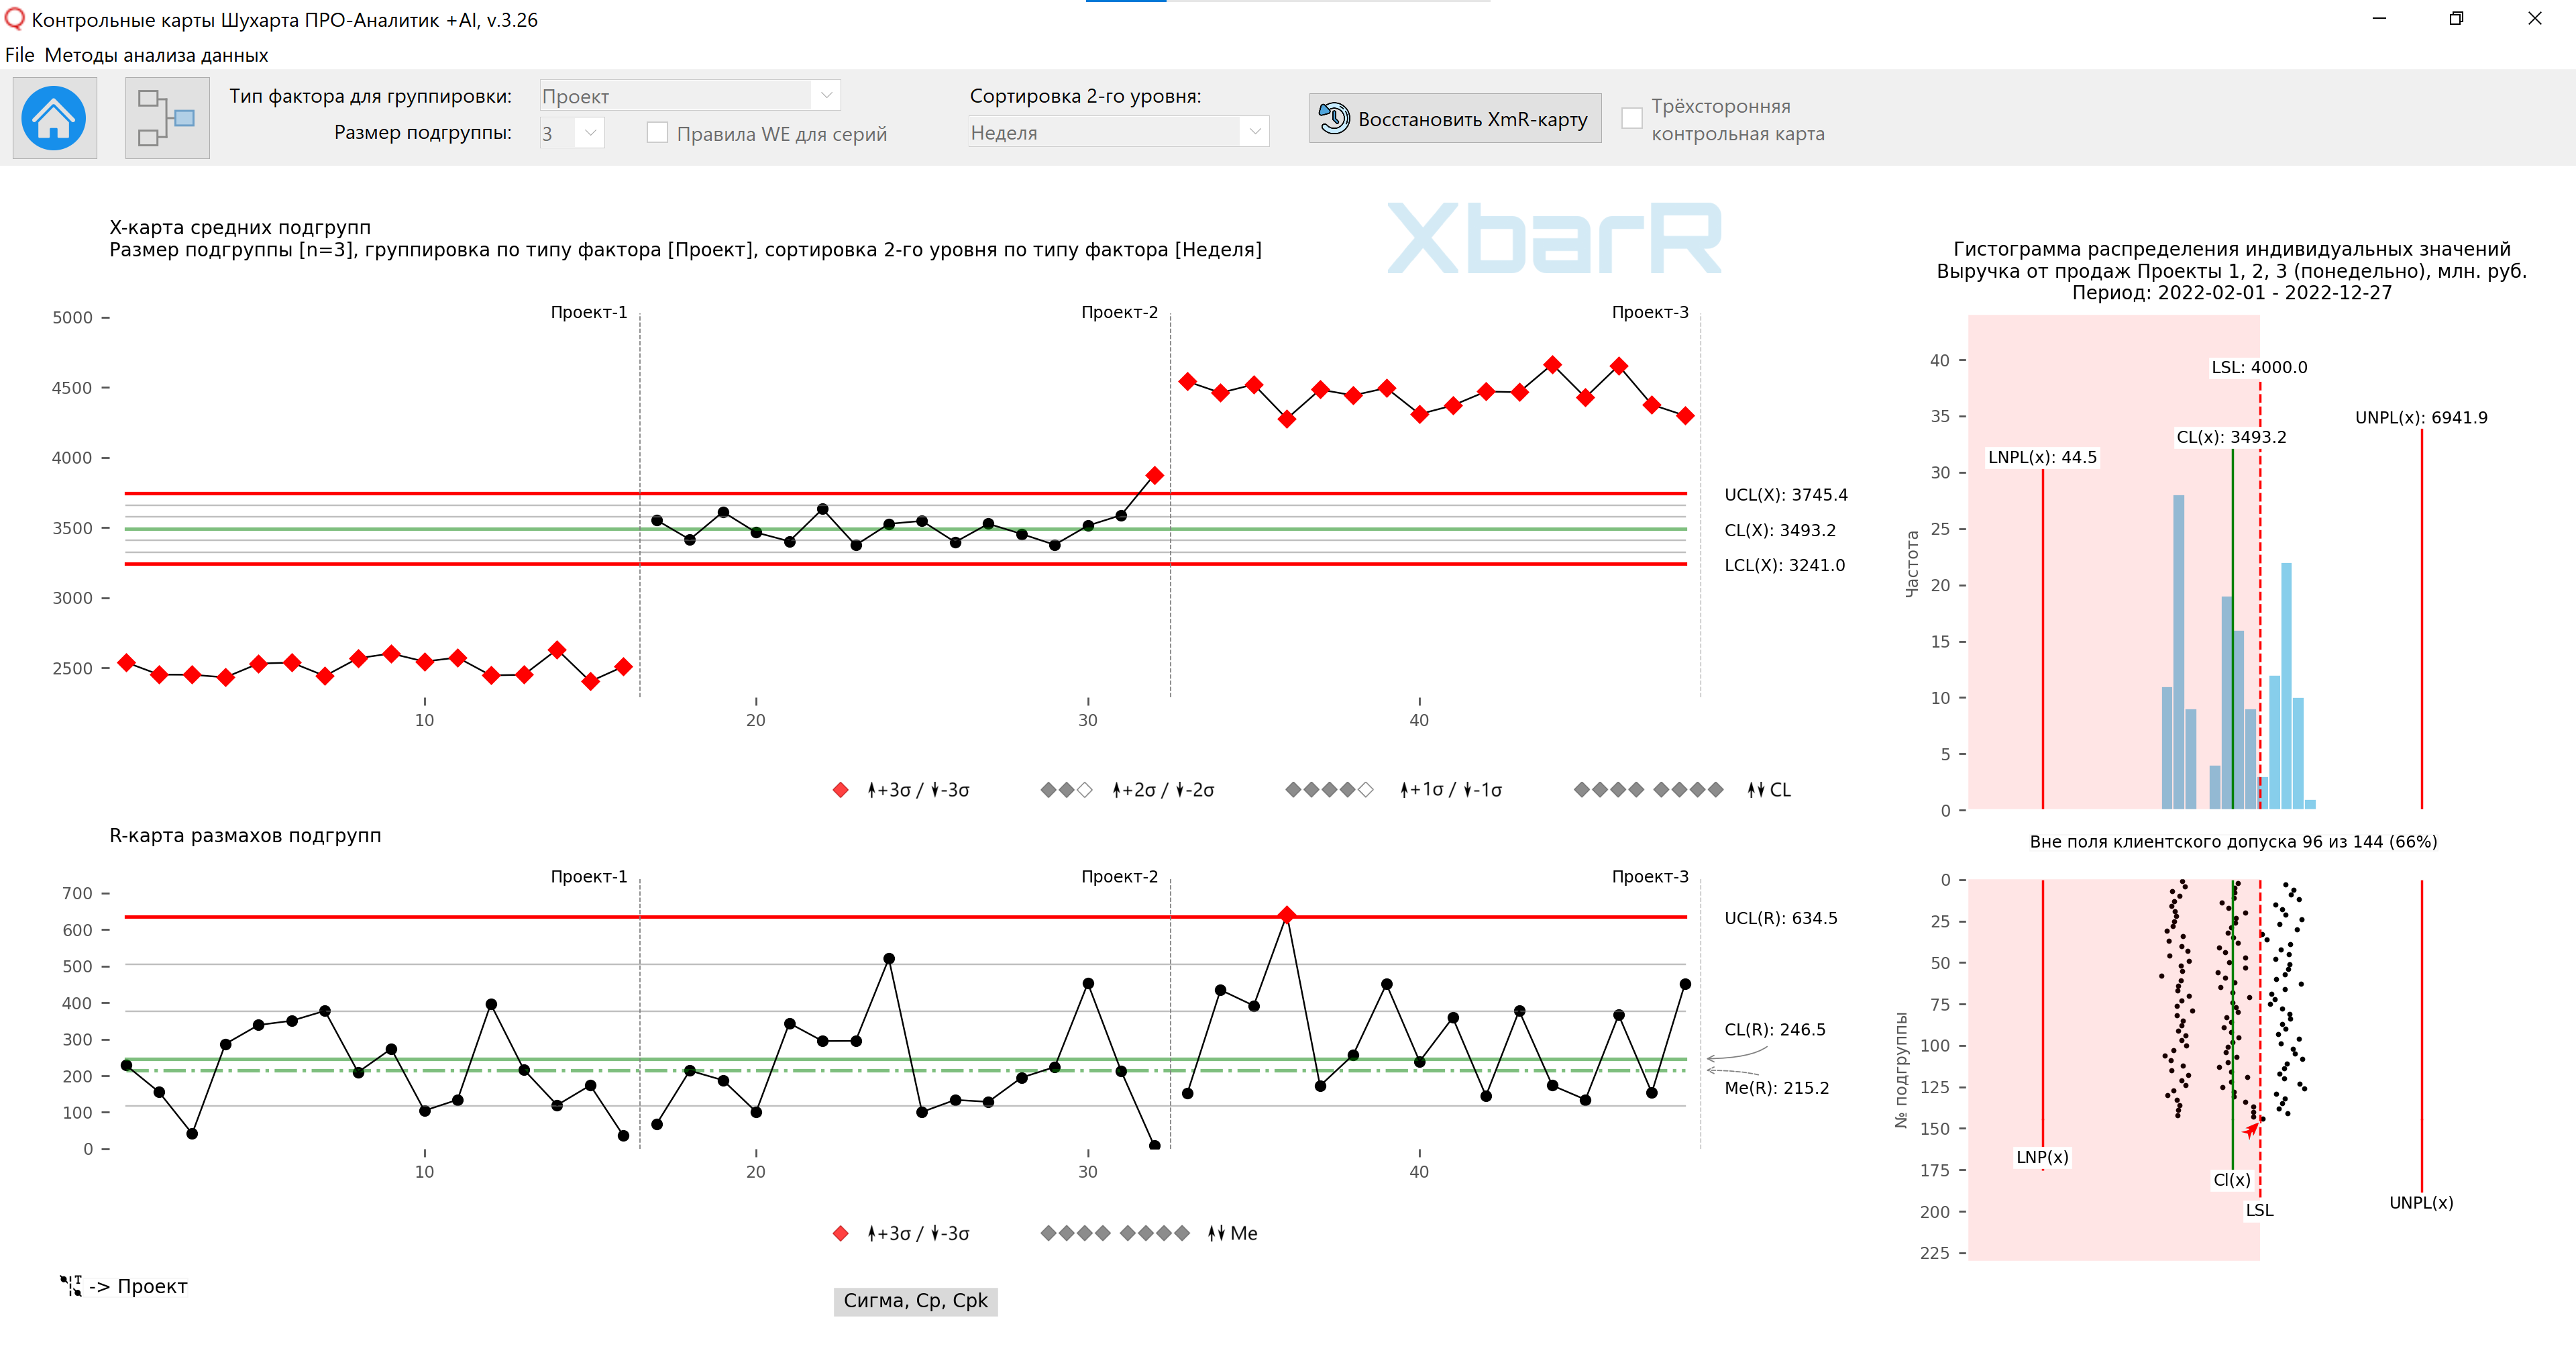 مخطط التحكم XbarR لوسائل المجموعة الفرعية ونطاقاتها للتجميع العقلاني للبيانات